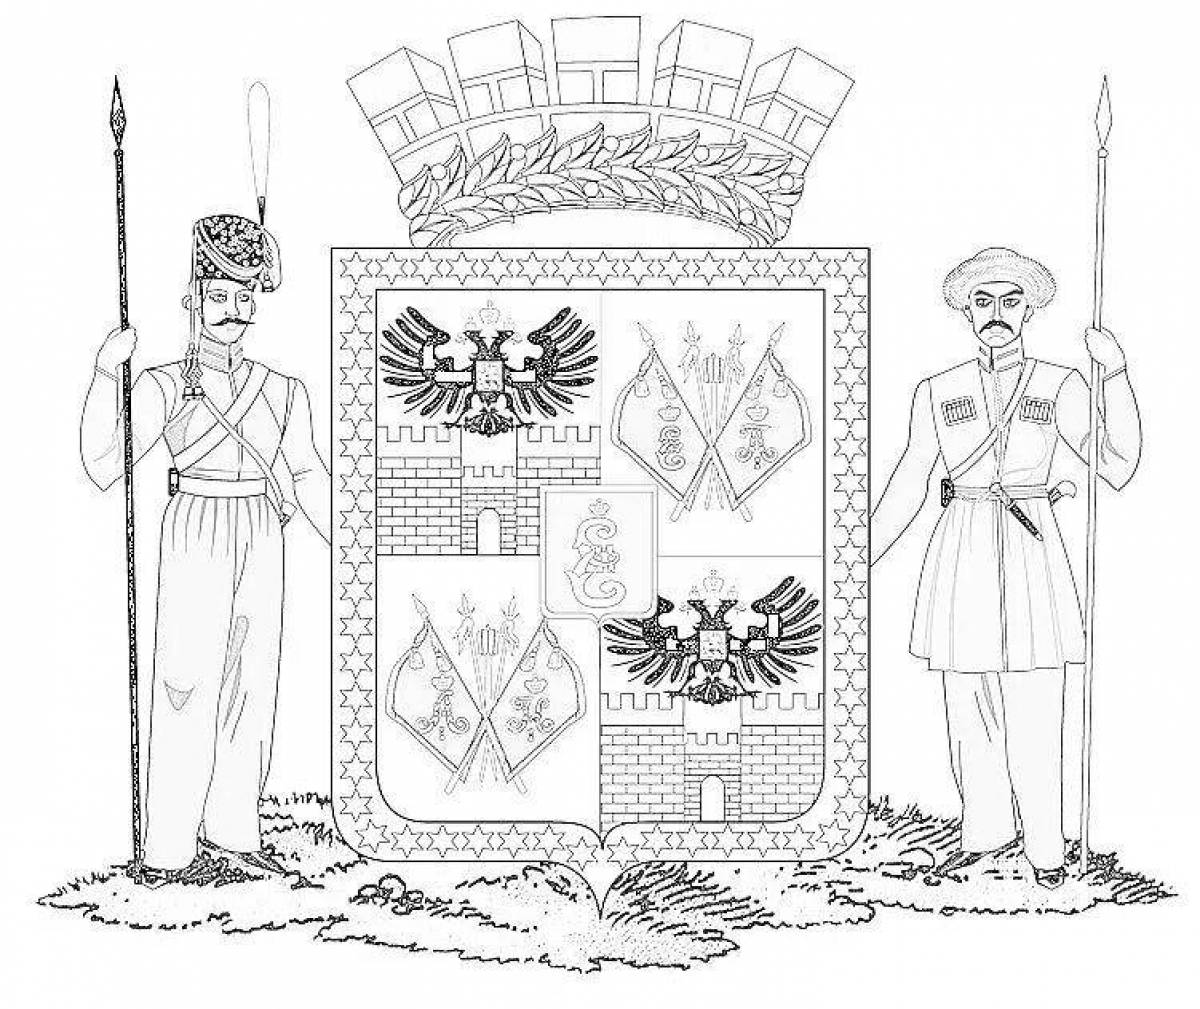 Colorful page of the flag of krasnodar region